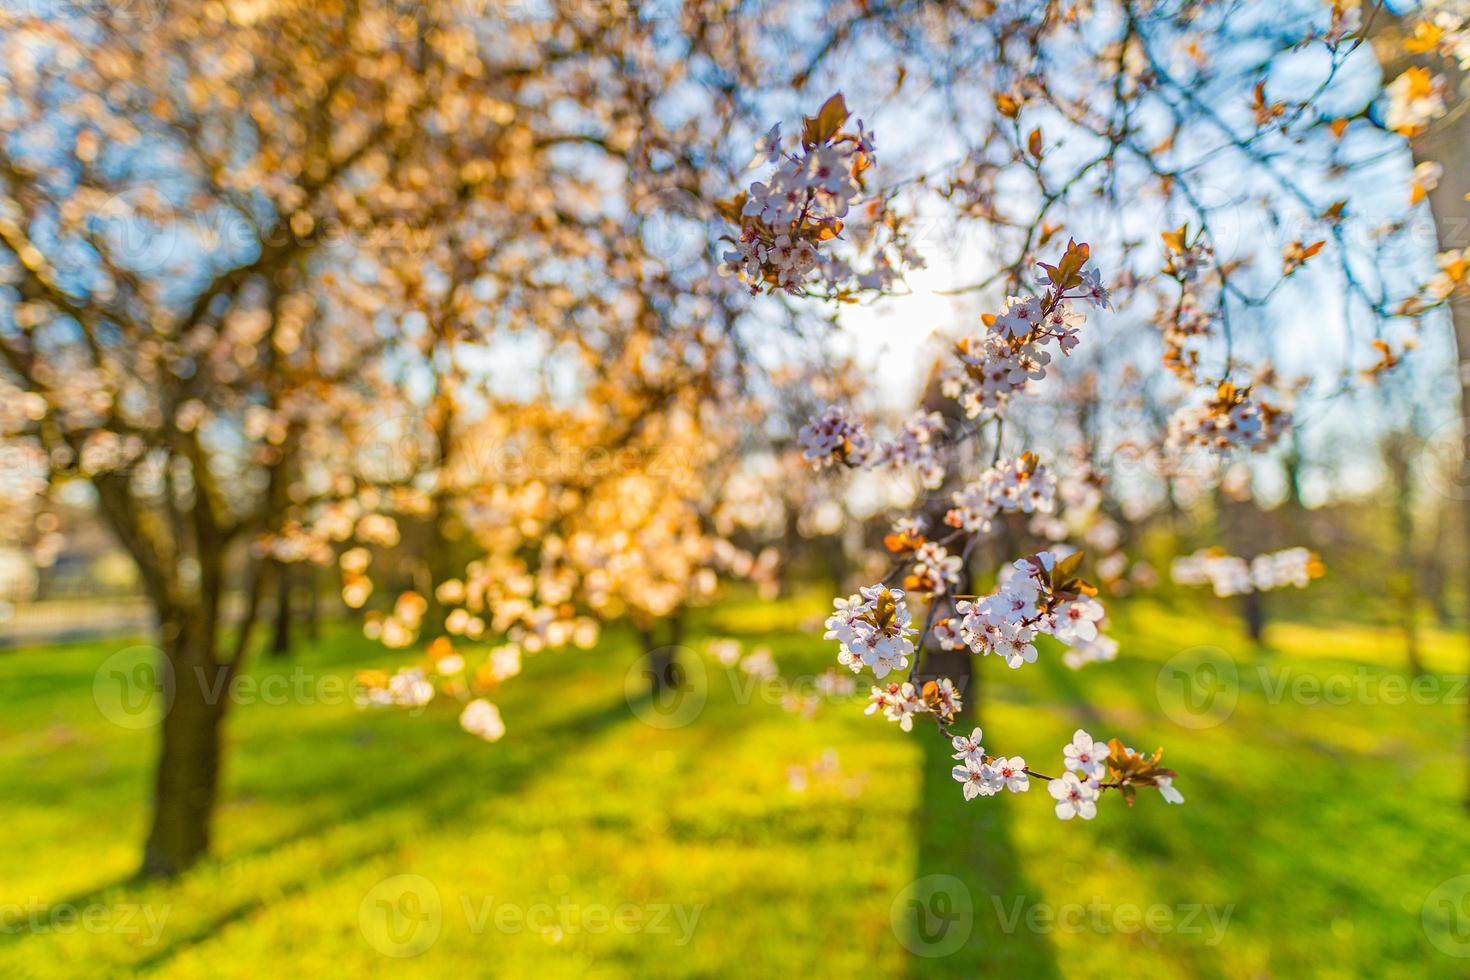 bakgrunder för vårrosa blommor. dröm natur närbild med sakura, körsbärsblom i suddigt bokeh vårlandskap. fredliga pastellfärger, romantiska blommande blommor foto